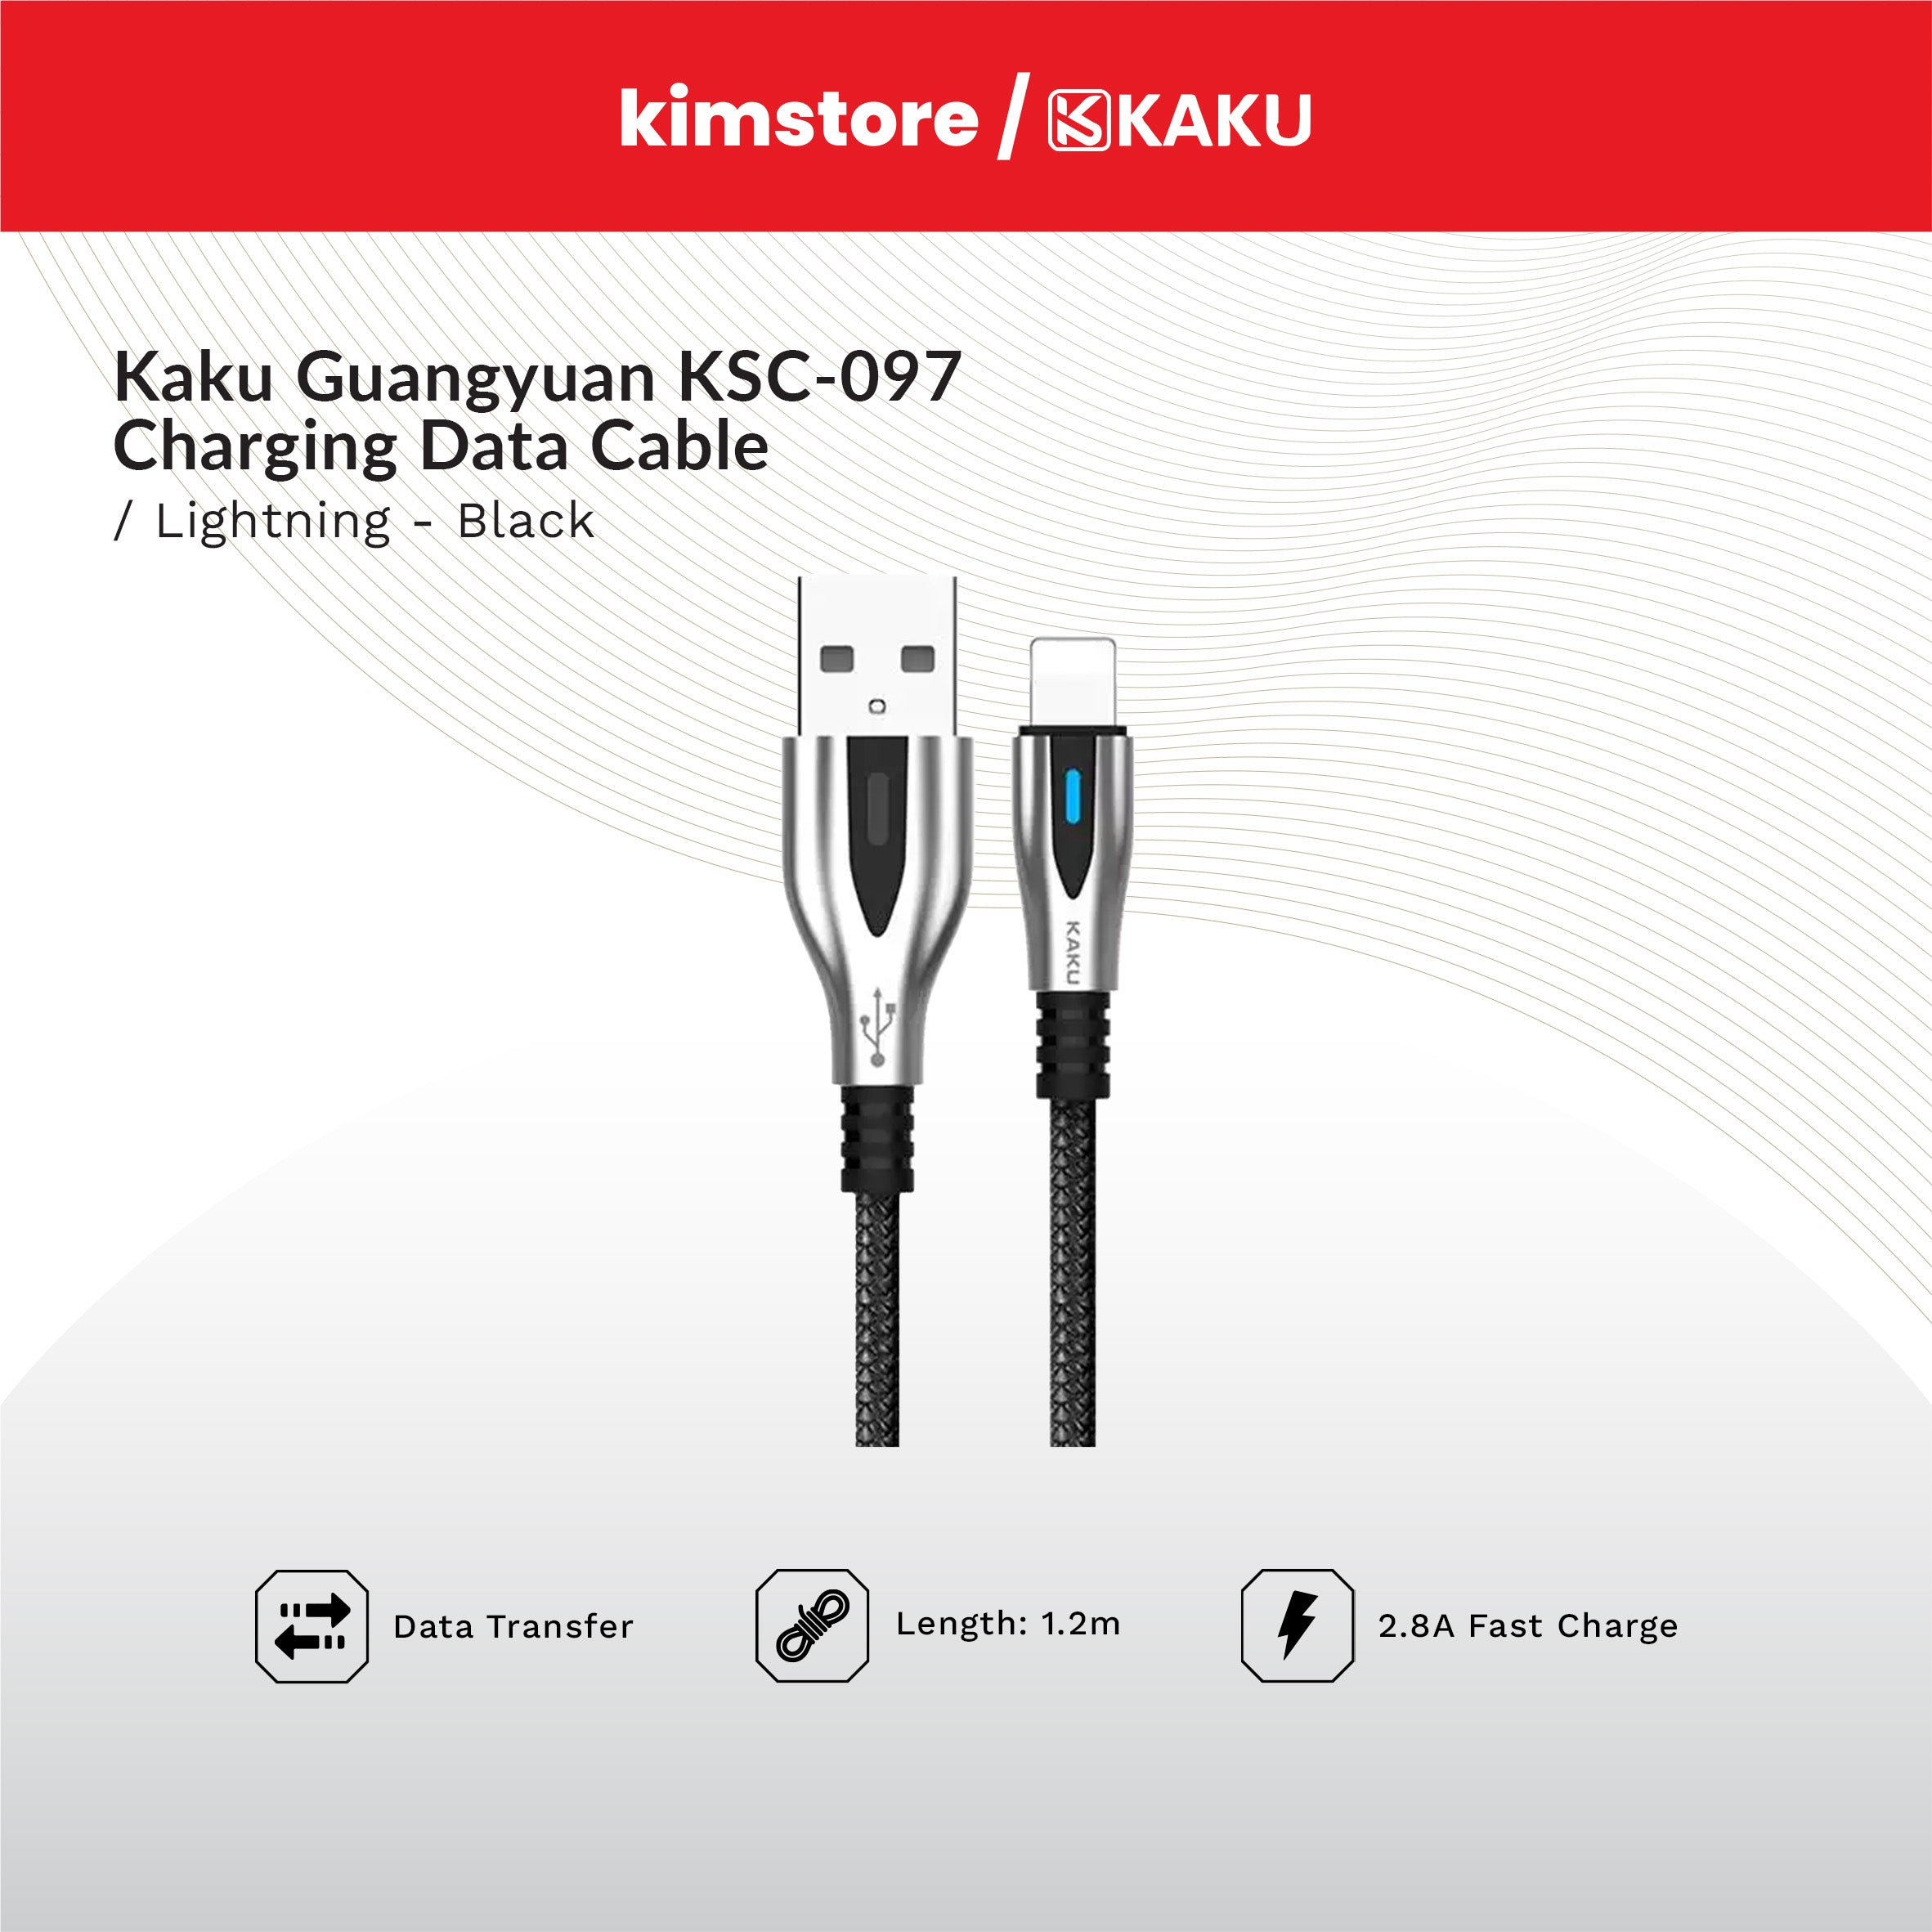 KAKU GUANGYUAN KSC-097 Lightning Charging Data Cable